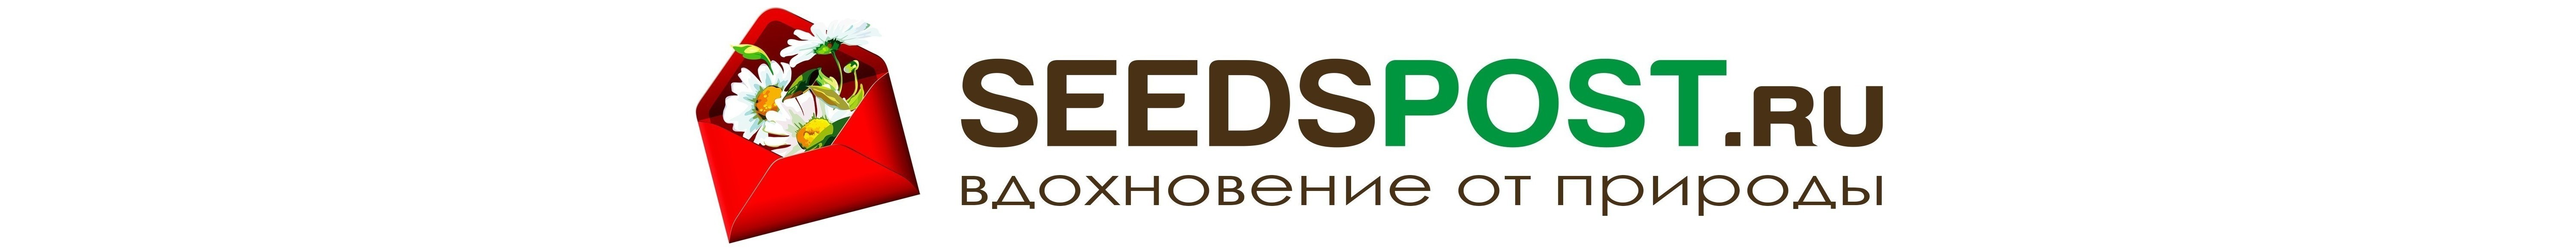 SEEDSPOST.ru всегда предлагает широкую линейку товаров для дачников